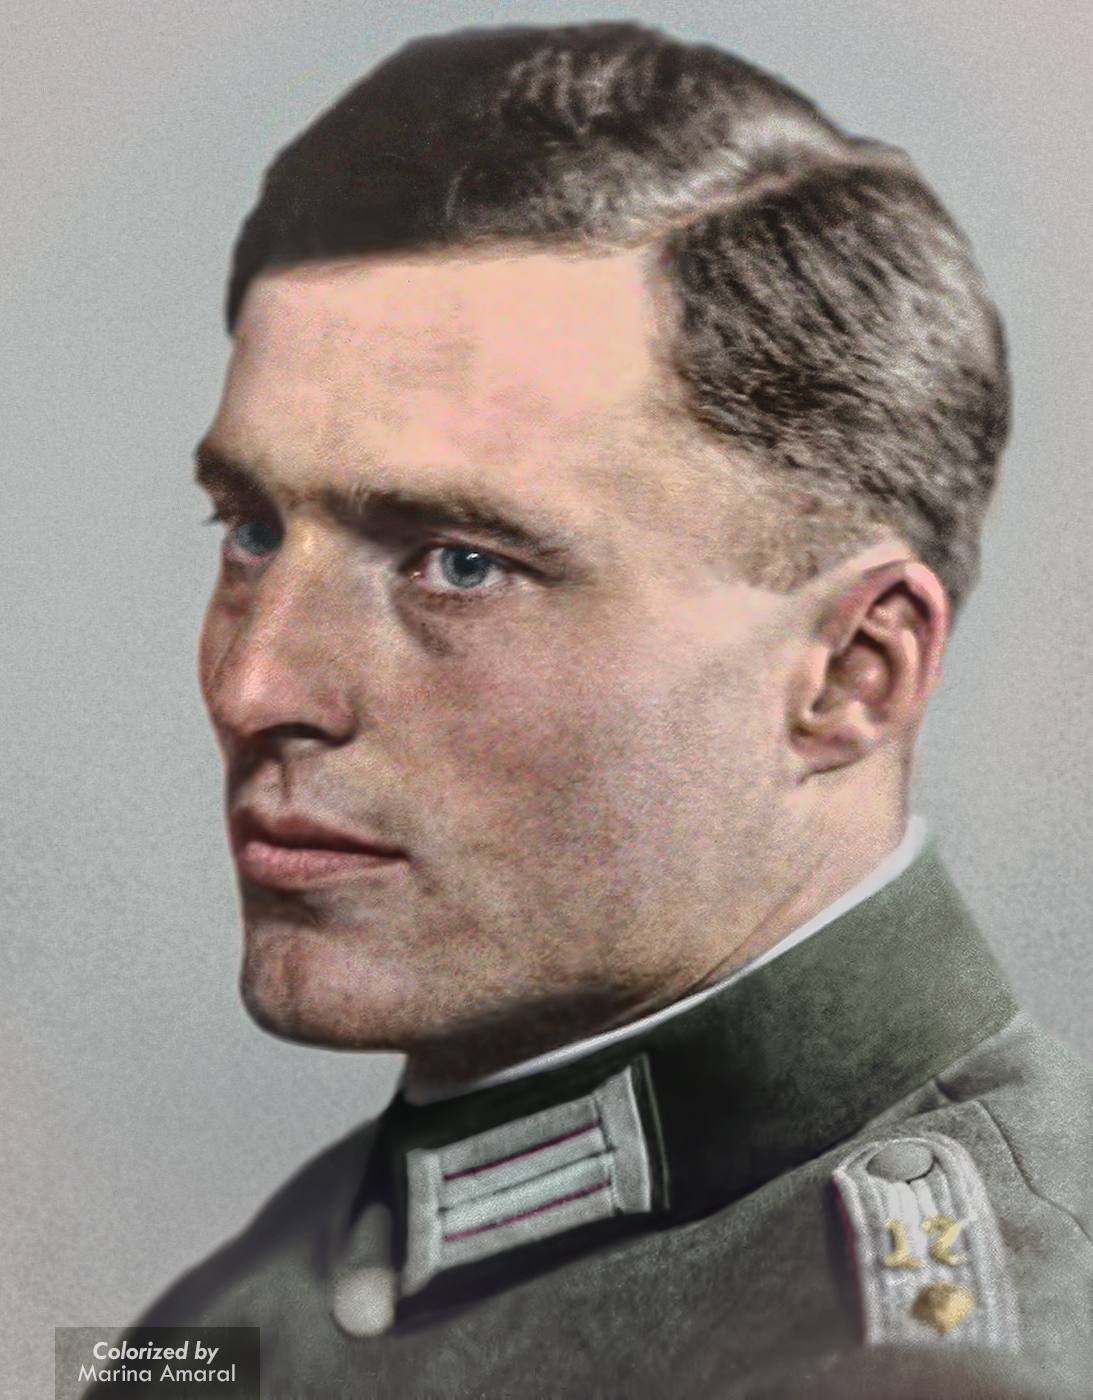 38. The German officer who tried to kill Adolf Hitler. Col. Claus Schenk Graf Von Stauffenberg